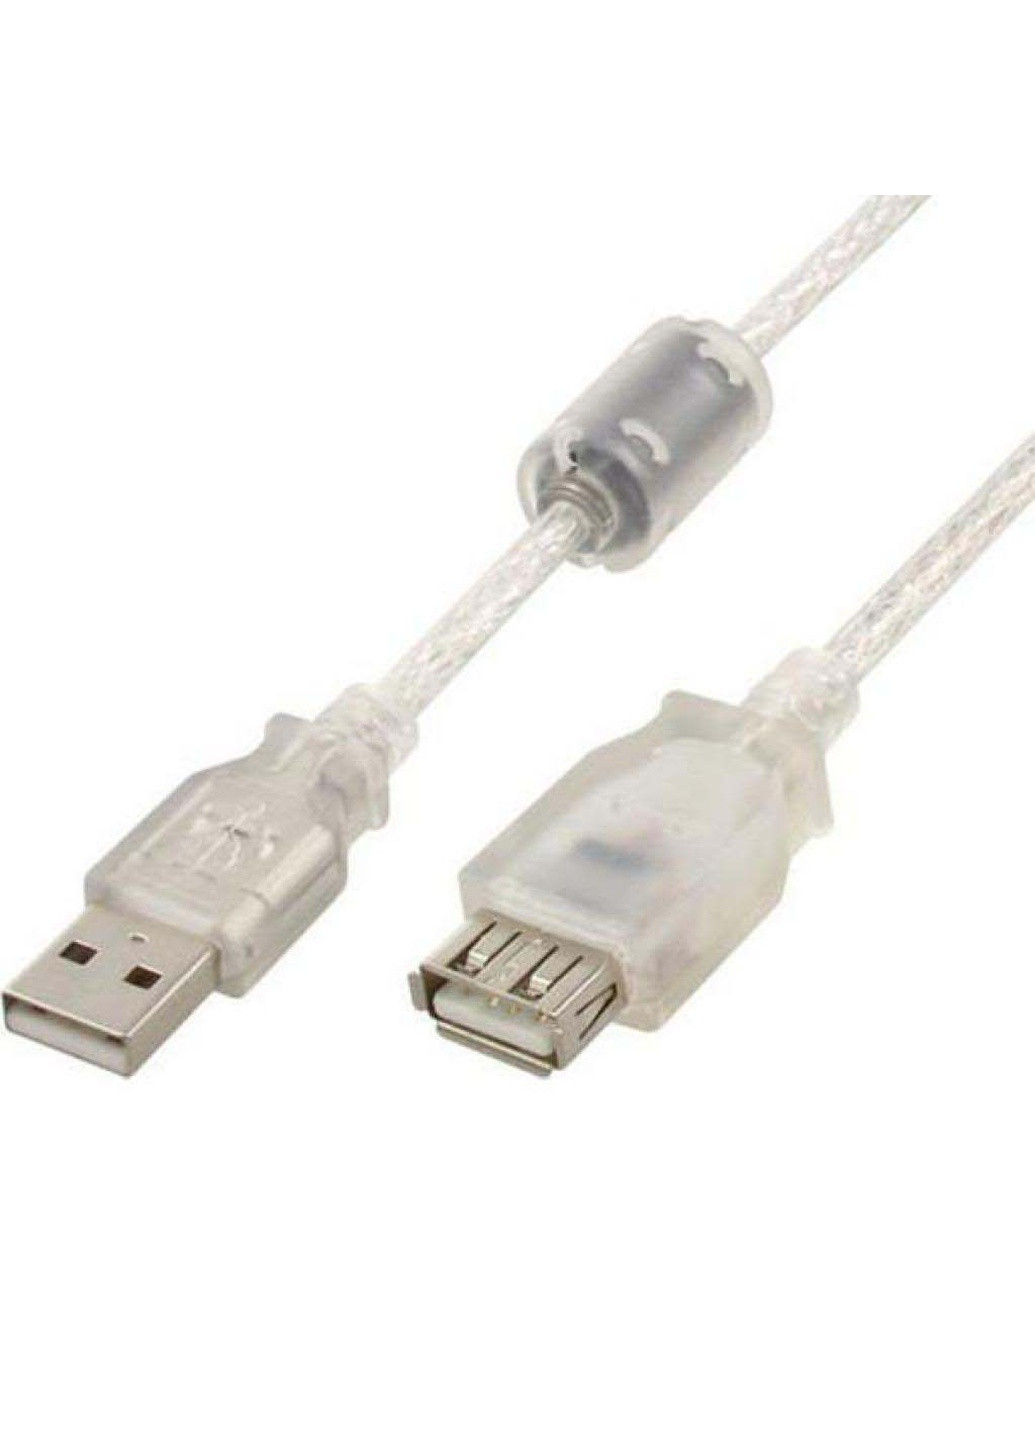 Дата кабель USB 2.0 AM / AF 1.8m (CCF-USB2-AMAF-TR-6) Cablexpert usb 2.0 am/af 1.8m (239382751)